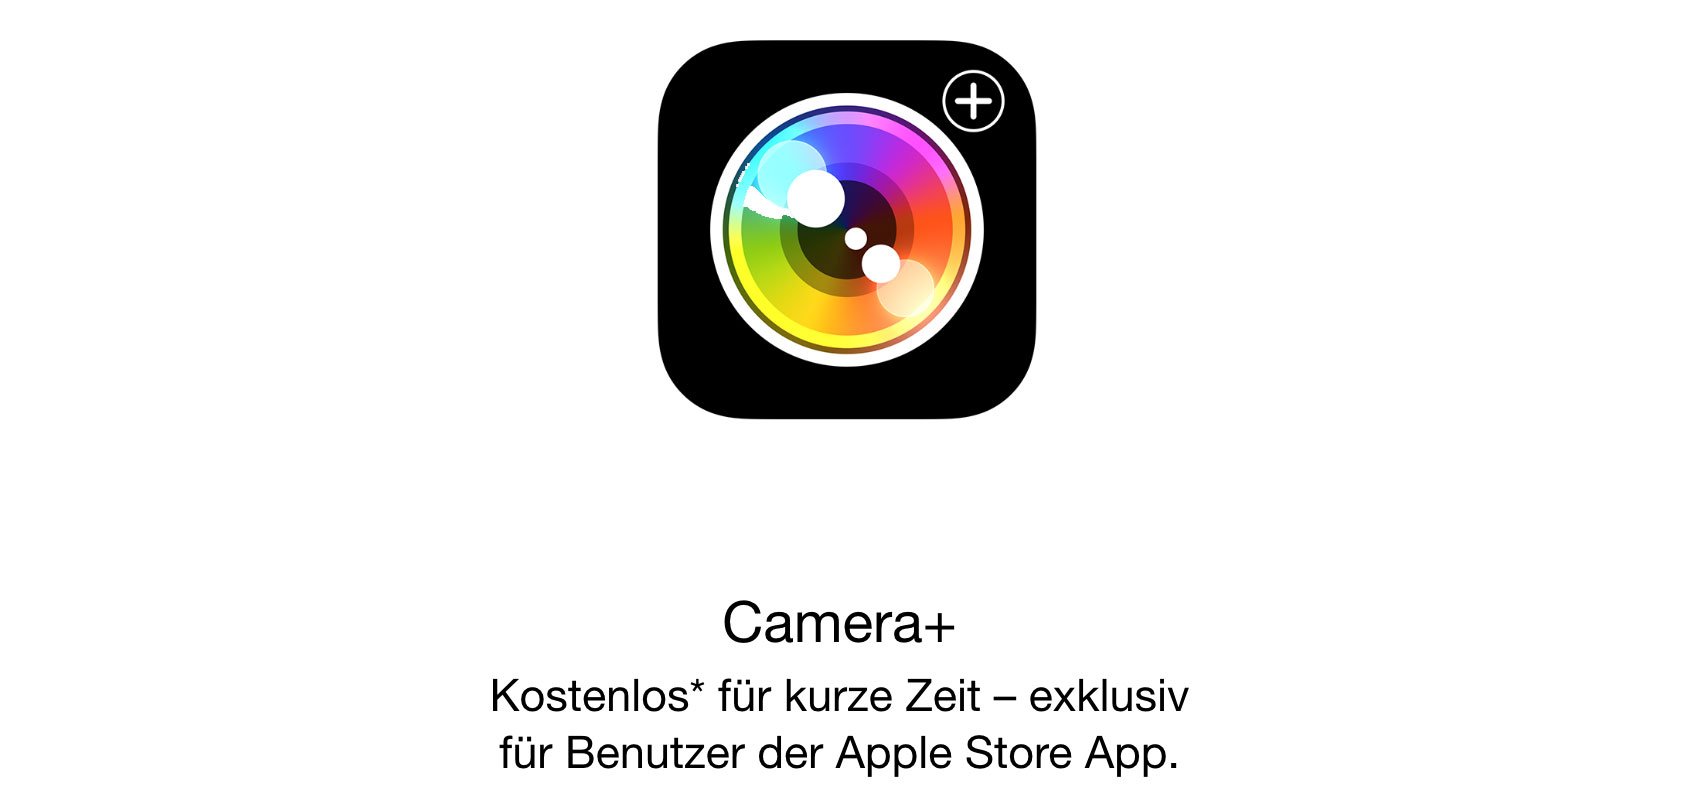 Camera+ heute kostenlos: Foto-App fürs iPhone mit iOS 8 Support! 2